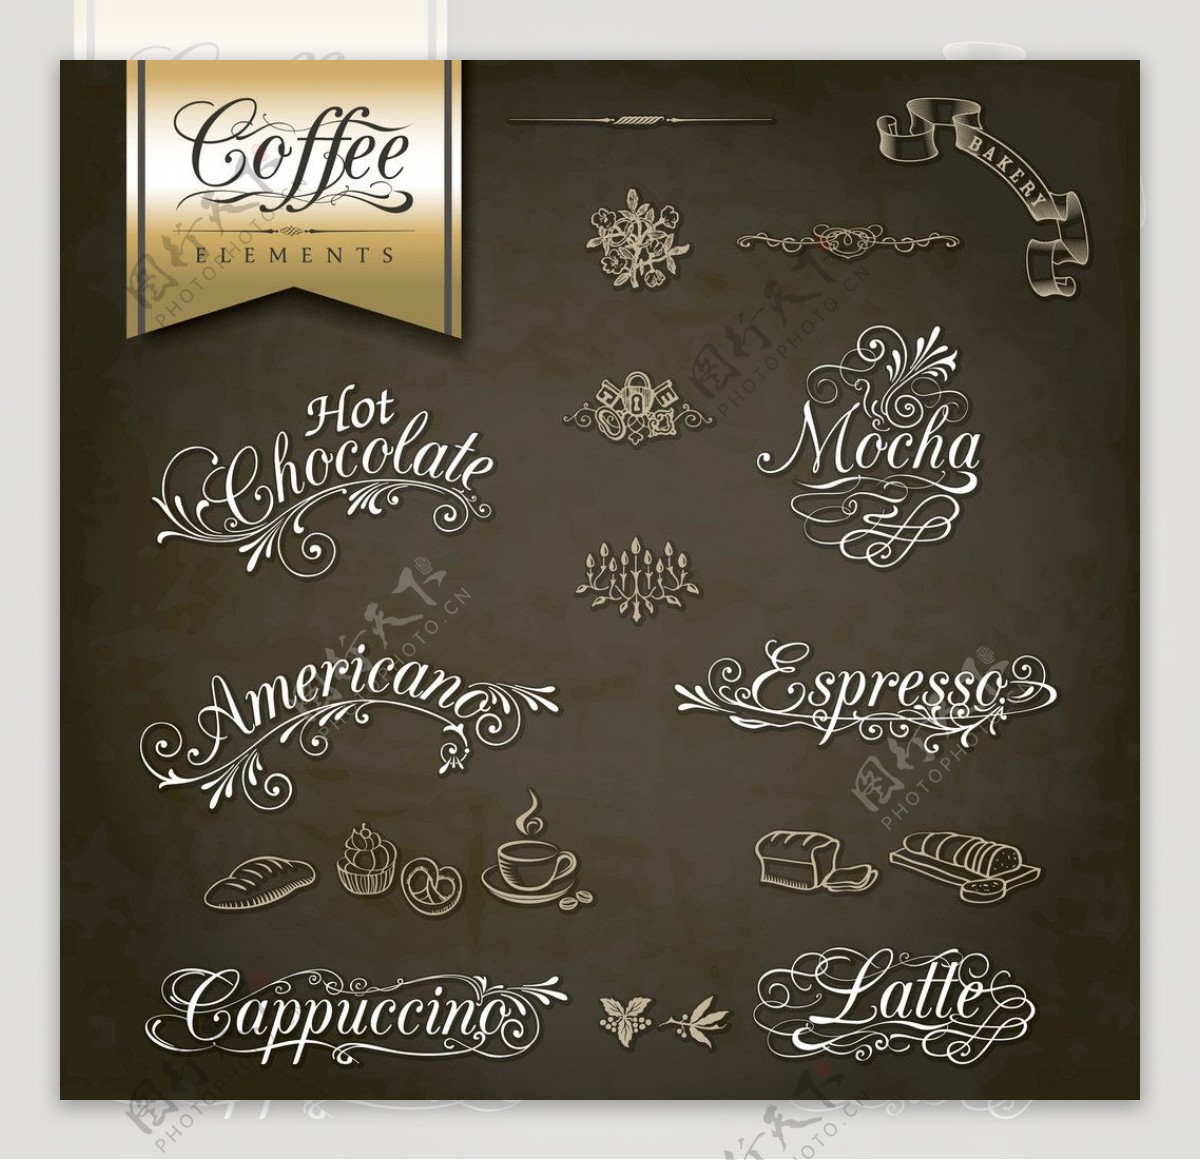 咖啡英文手写字体图片